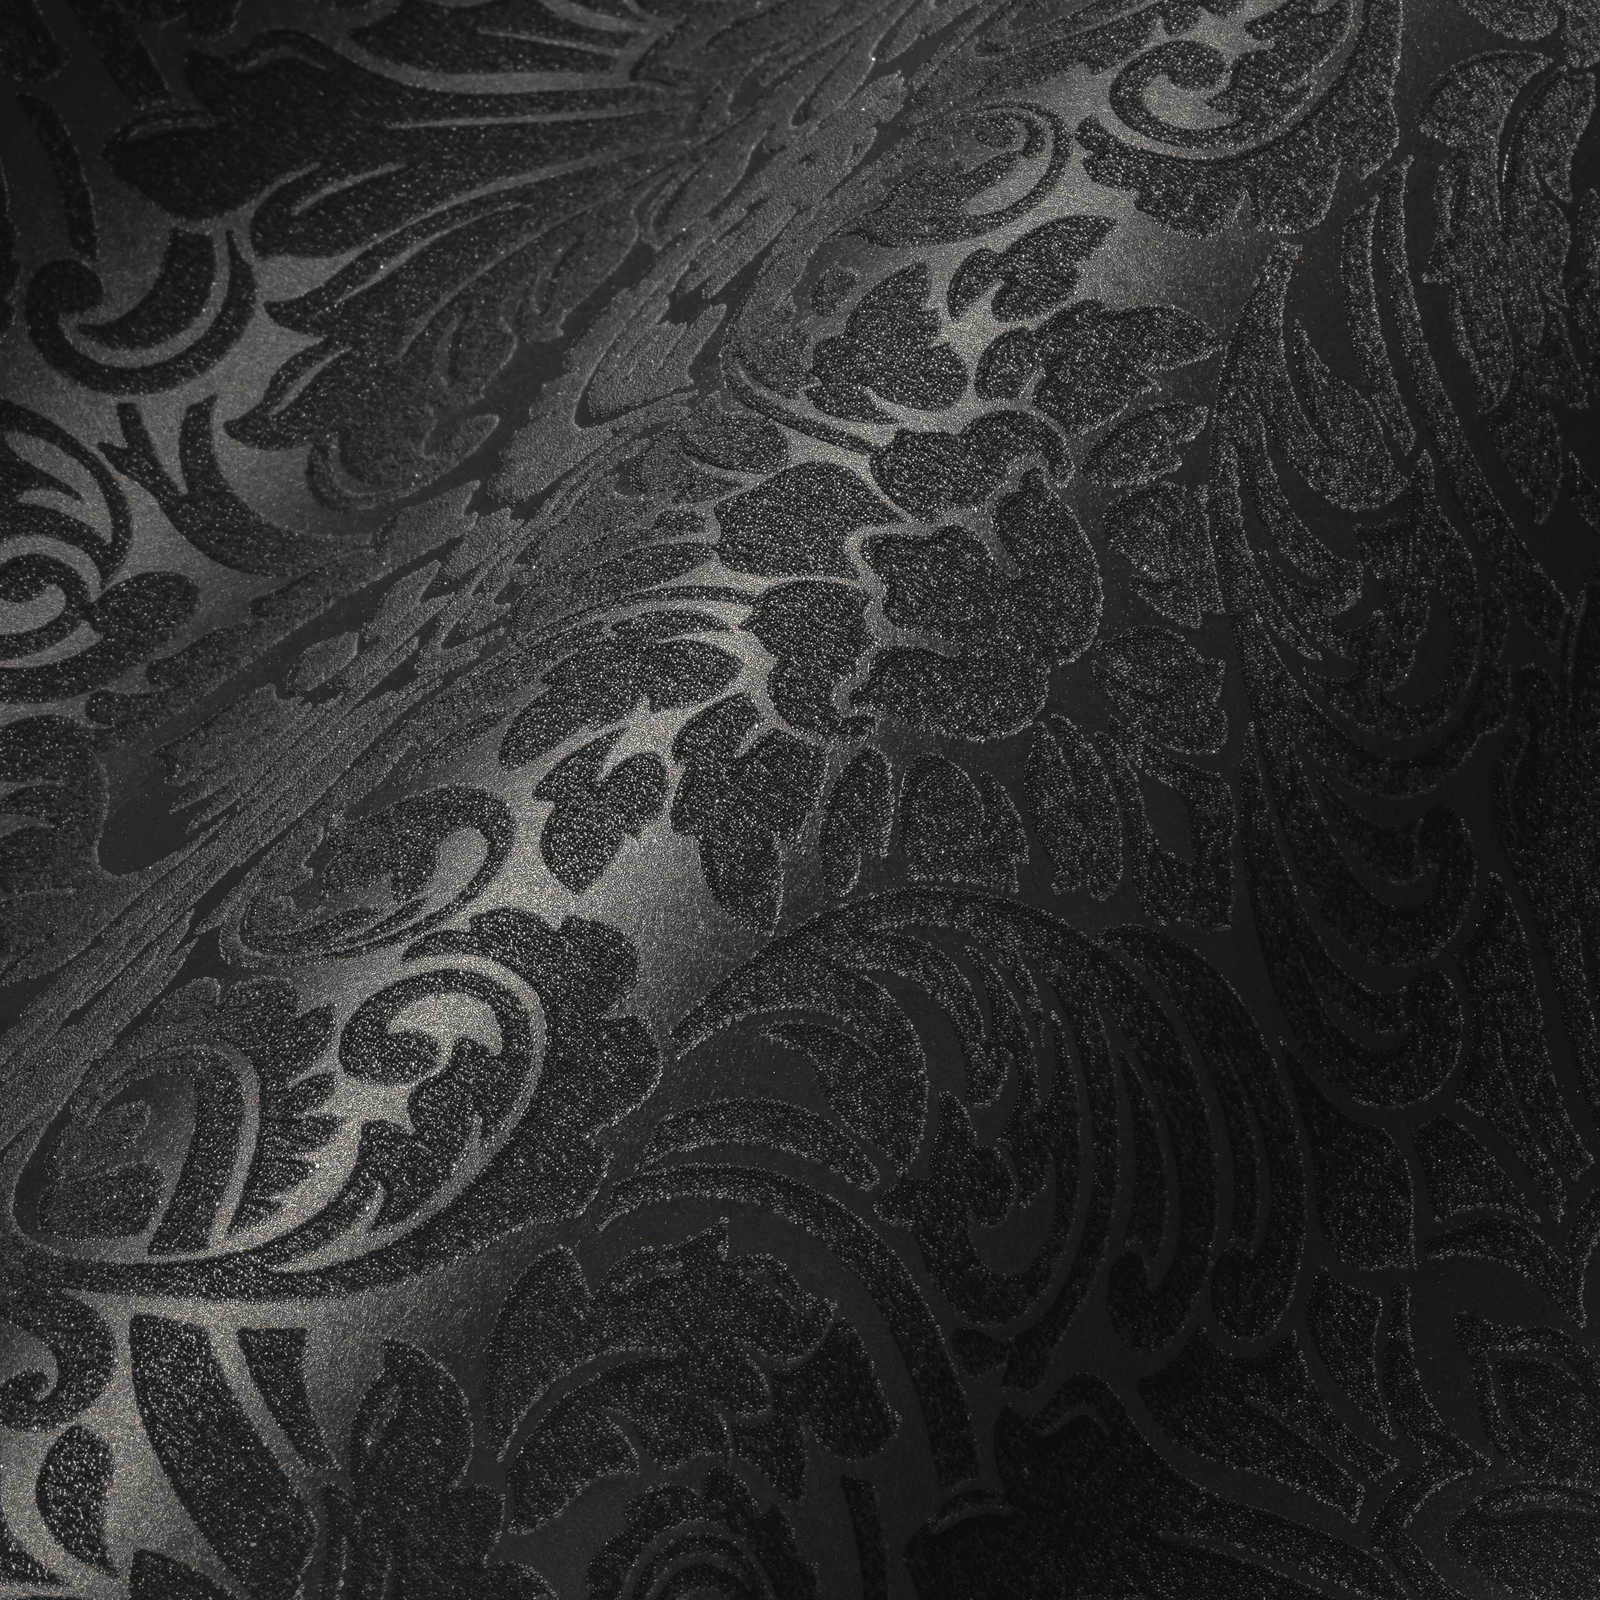             Papel pintado ornamental efecto metálico y diseño floral - plata, negro
        